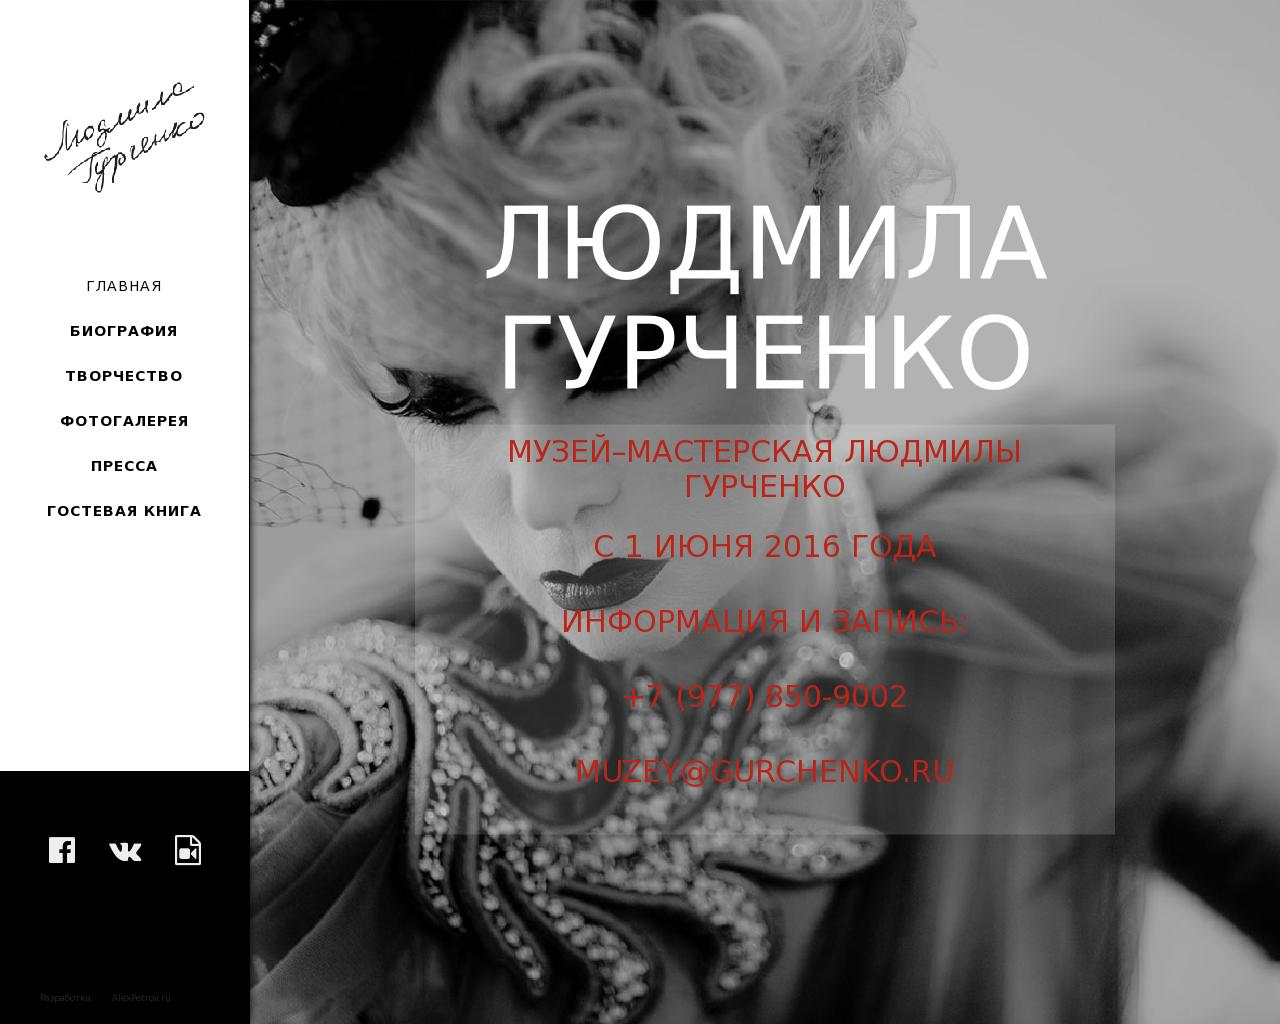 Изображение сайта gurchenko.ru в разрешении 1280x1024